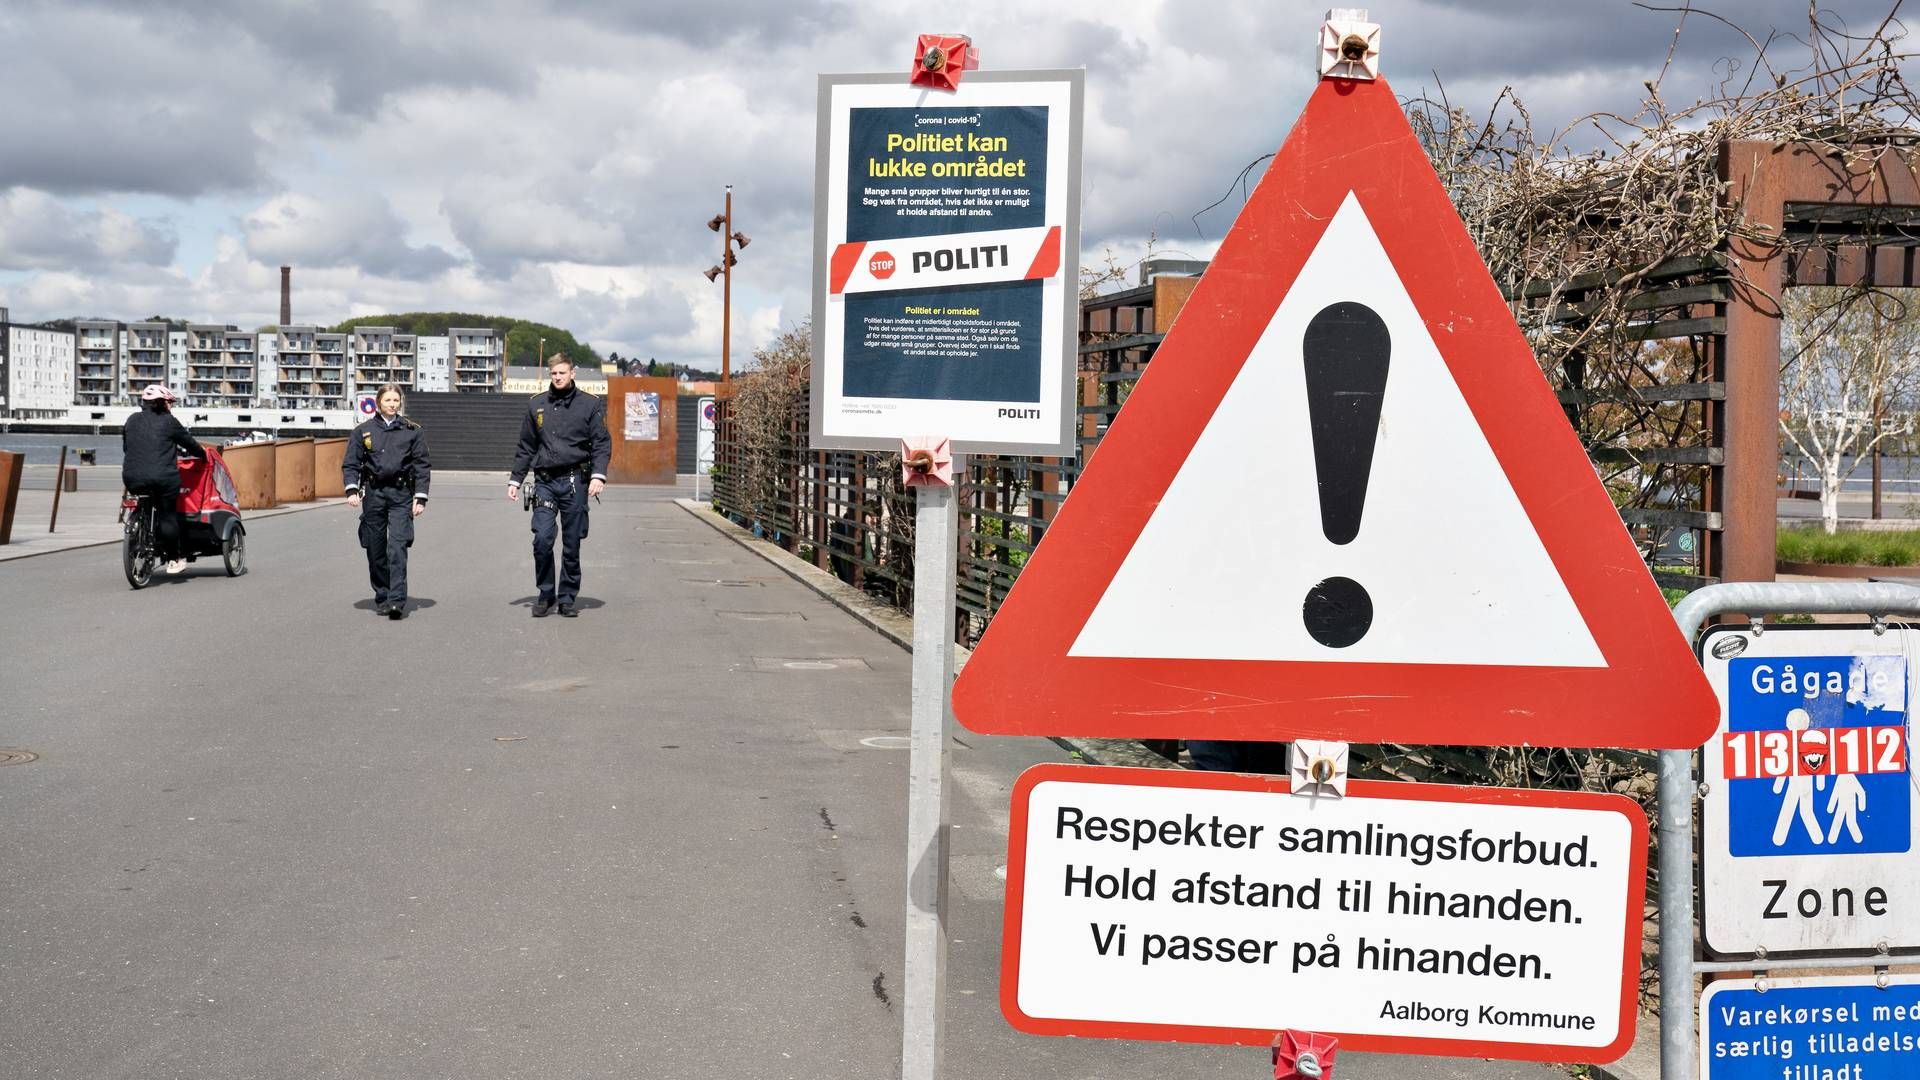 Risikoen for smittespredning gør, at danskerne bl.a. skal spritte af og holde afstand til hinanden. De samme regler gælder på landets byggepladser. | Foto: Henning Bagger / Ritzau Scanpix